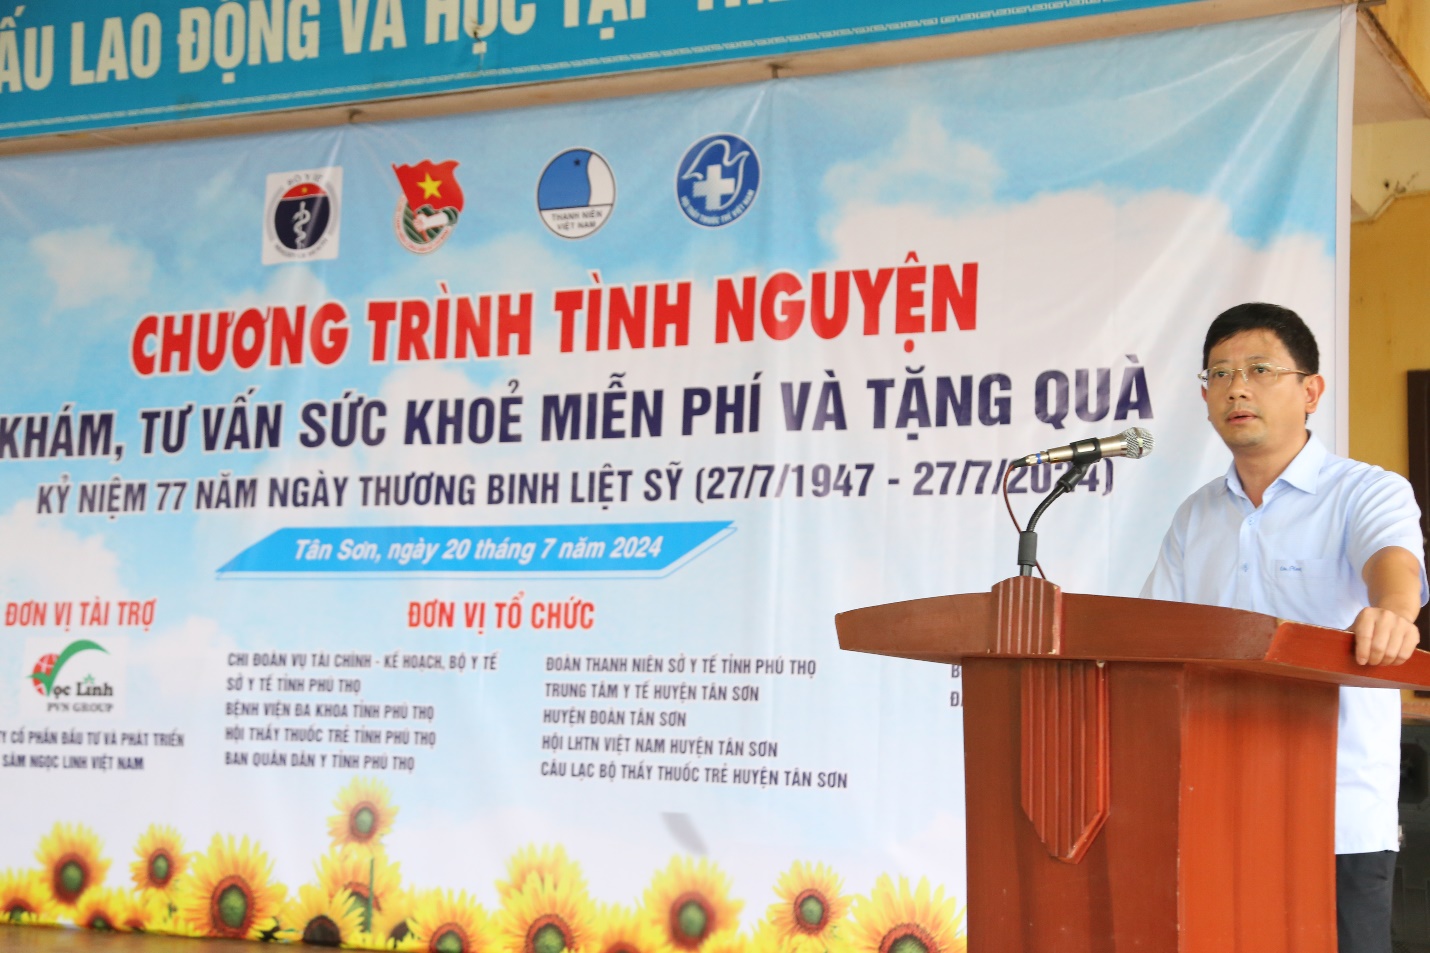 Đồng chí Dương Đức Thiện - Phó Vụ trưởng Vụ Kế hoạch - Tài chính, Bộ Y tế, Phó Ban Quân dân y cấp Bộ, phát biểu tại chương trình.